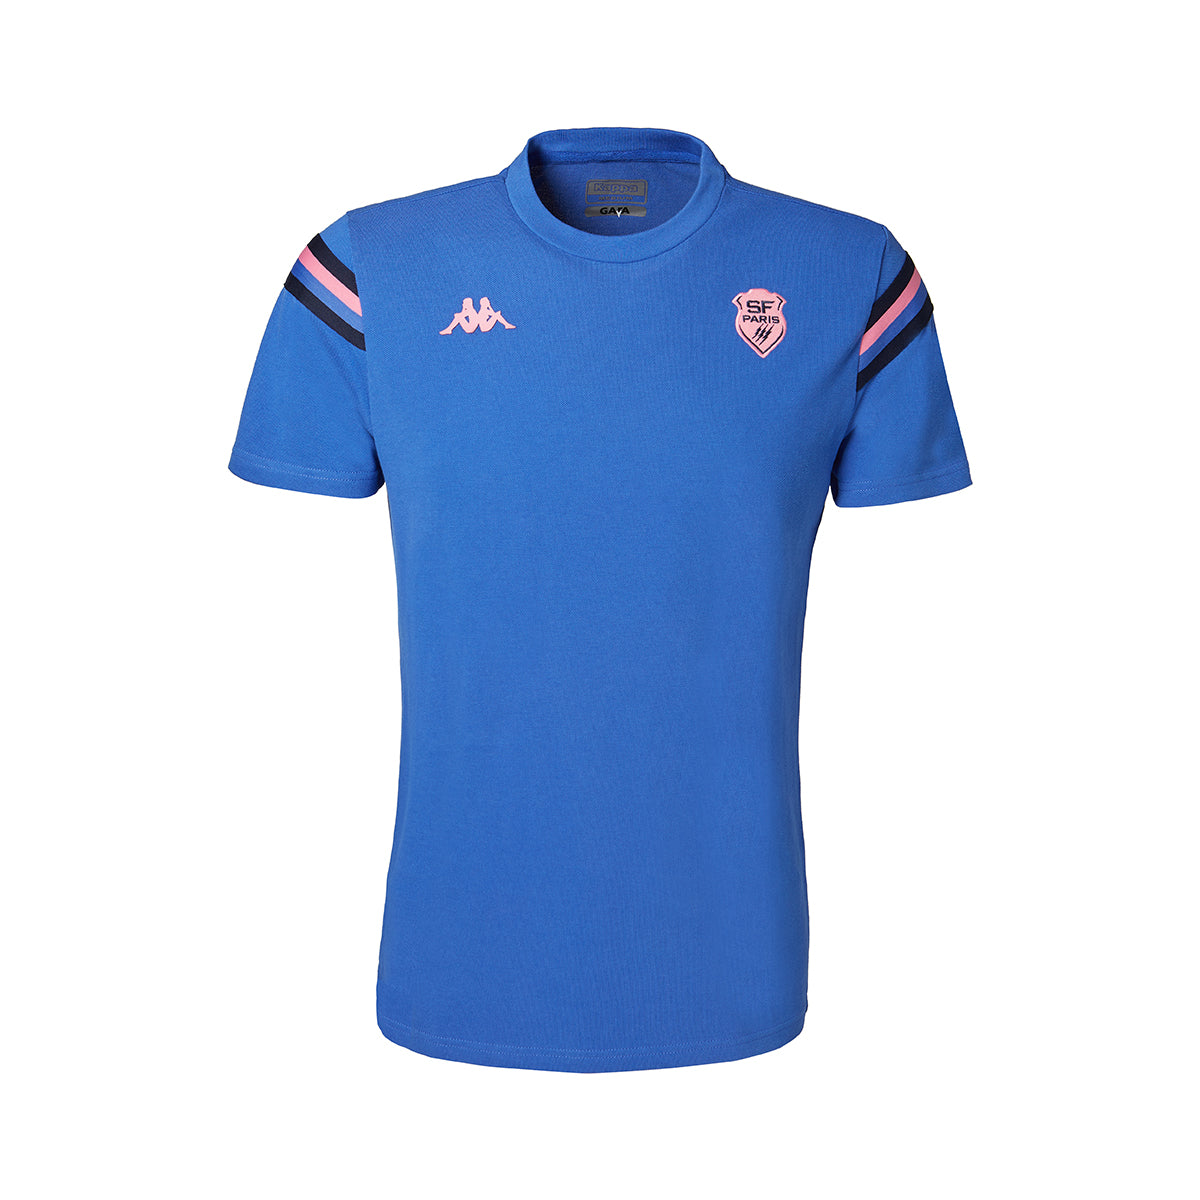 T-shirt Fiori Stade Français Paris Bleu homme - image 1